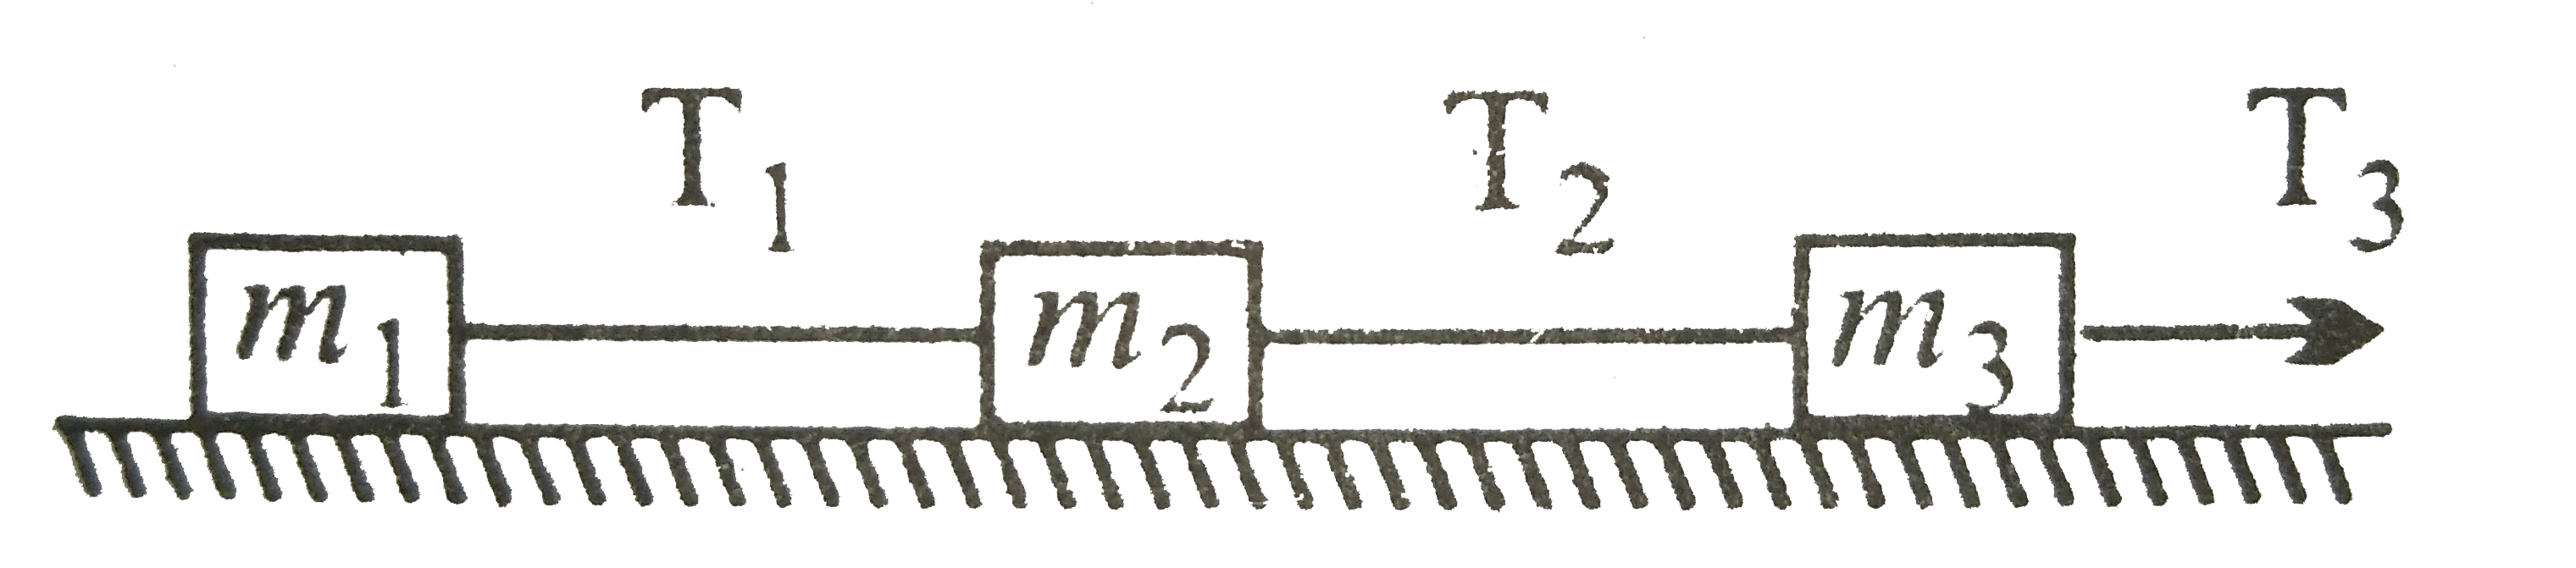 चित्र में T(3) = 40 न्यूटन, m(1) =10 किग्रा, m(2) = 6 किग्रा, m(3) = 4 किग्रा, तब T(2)  का मान होगा -